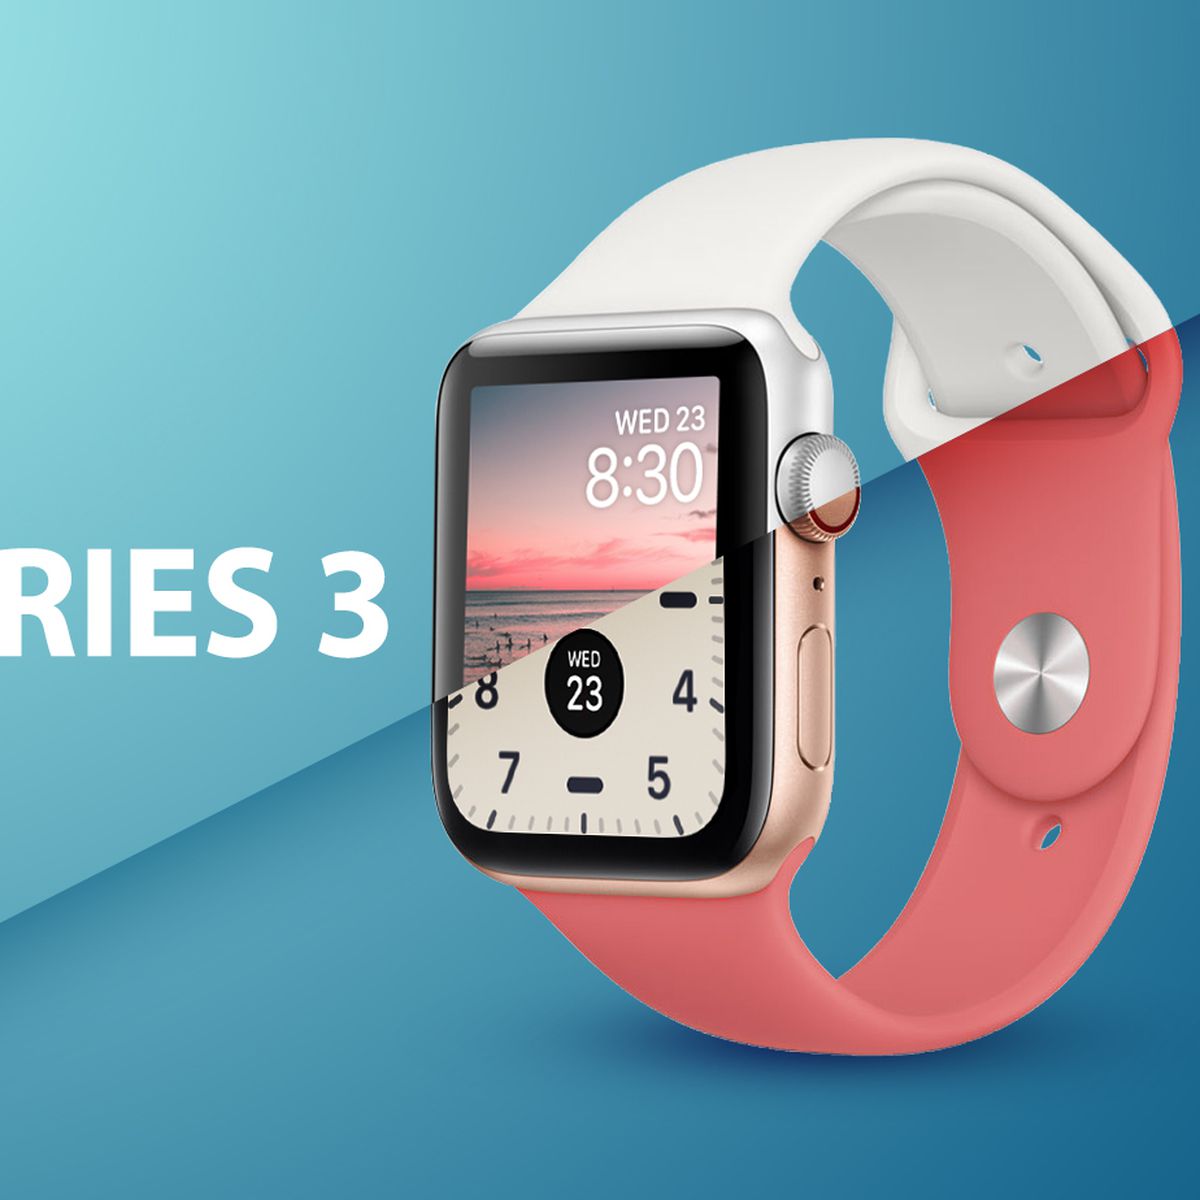 Apple Watch SE vs. Apple Watch Series 3 Buyer's Guide - MacRumors